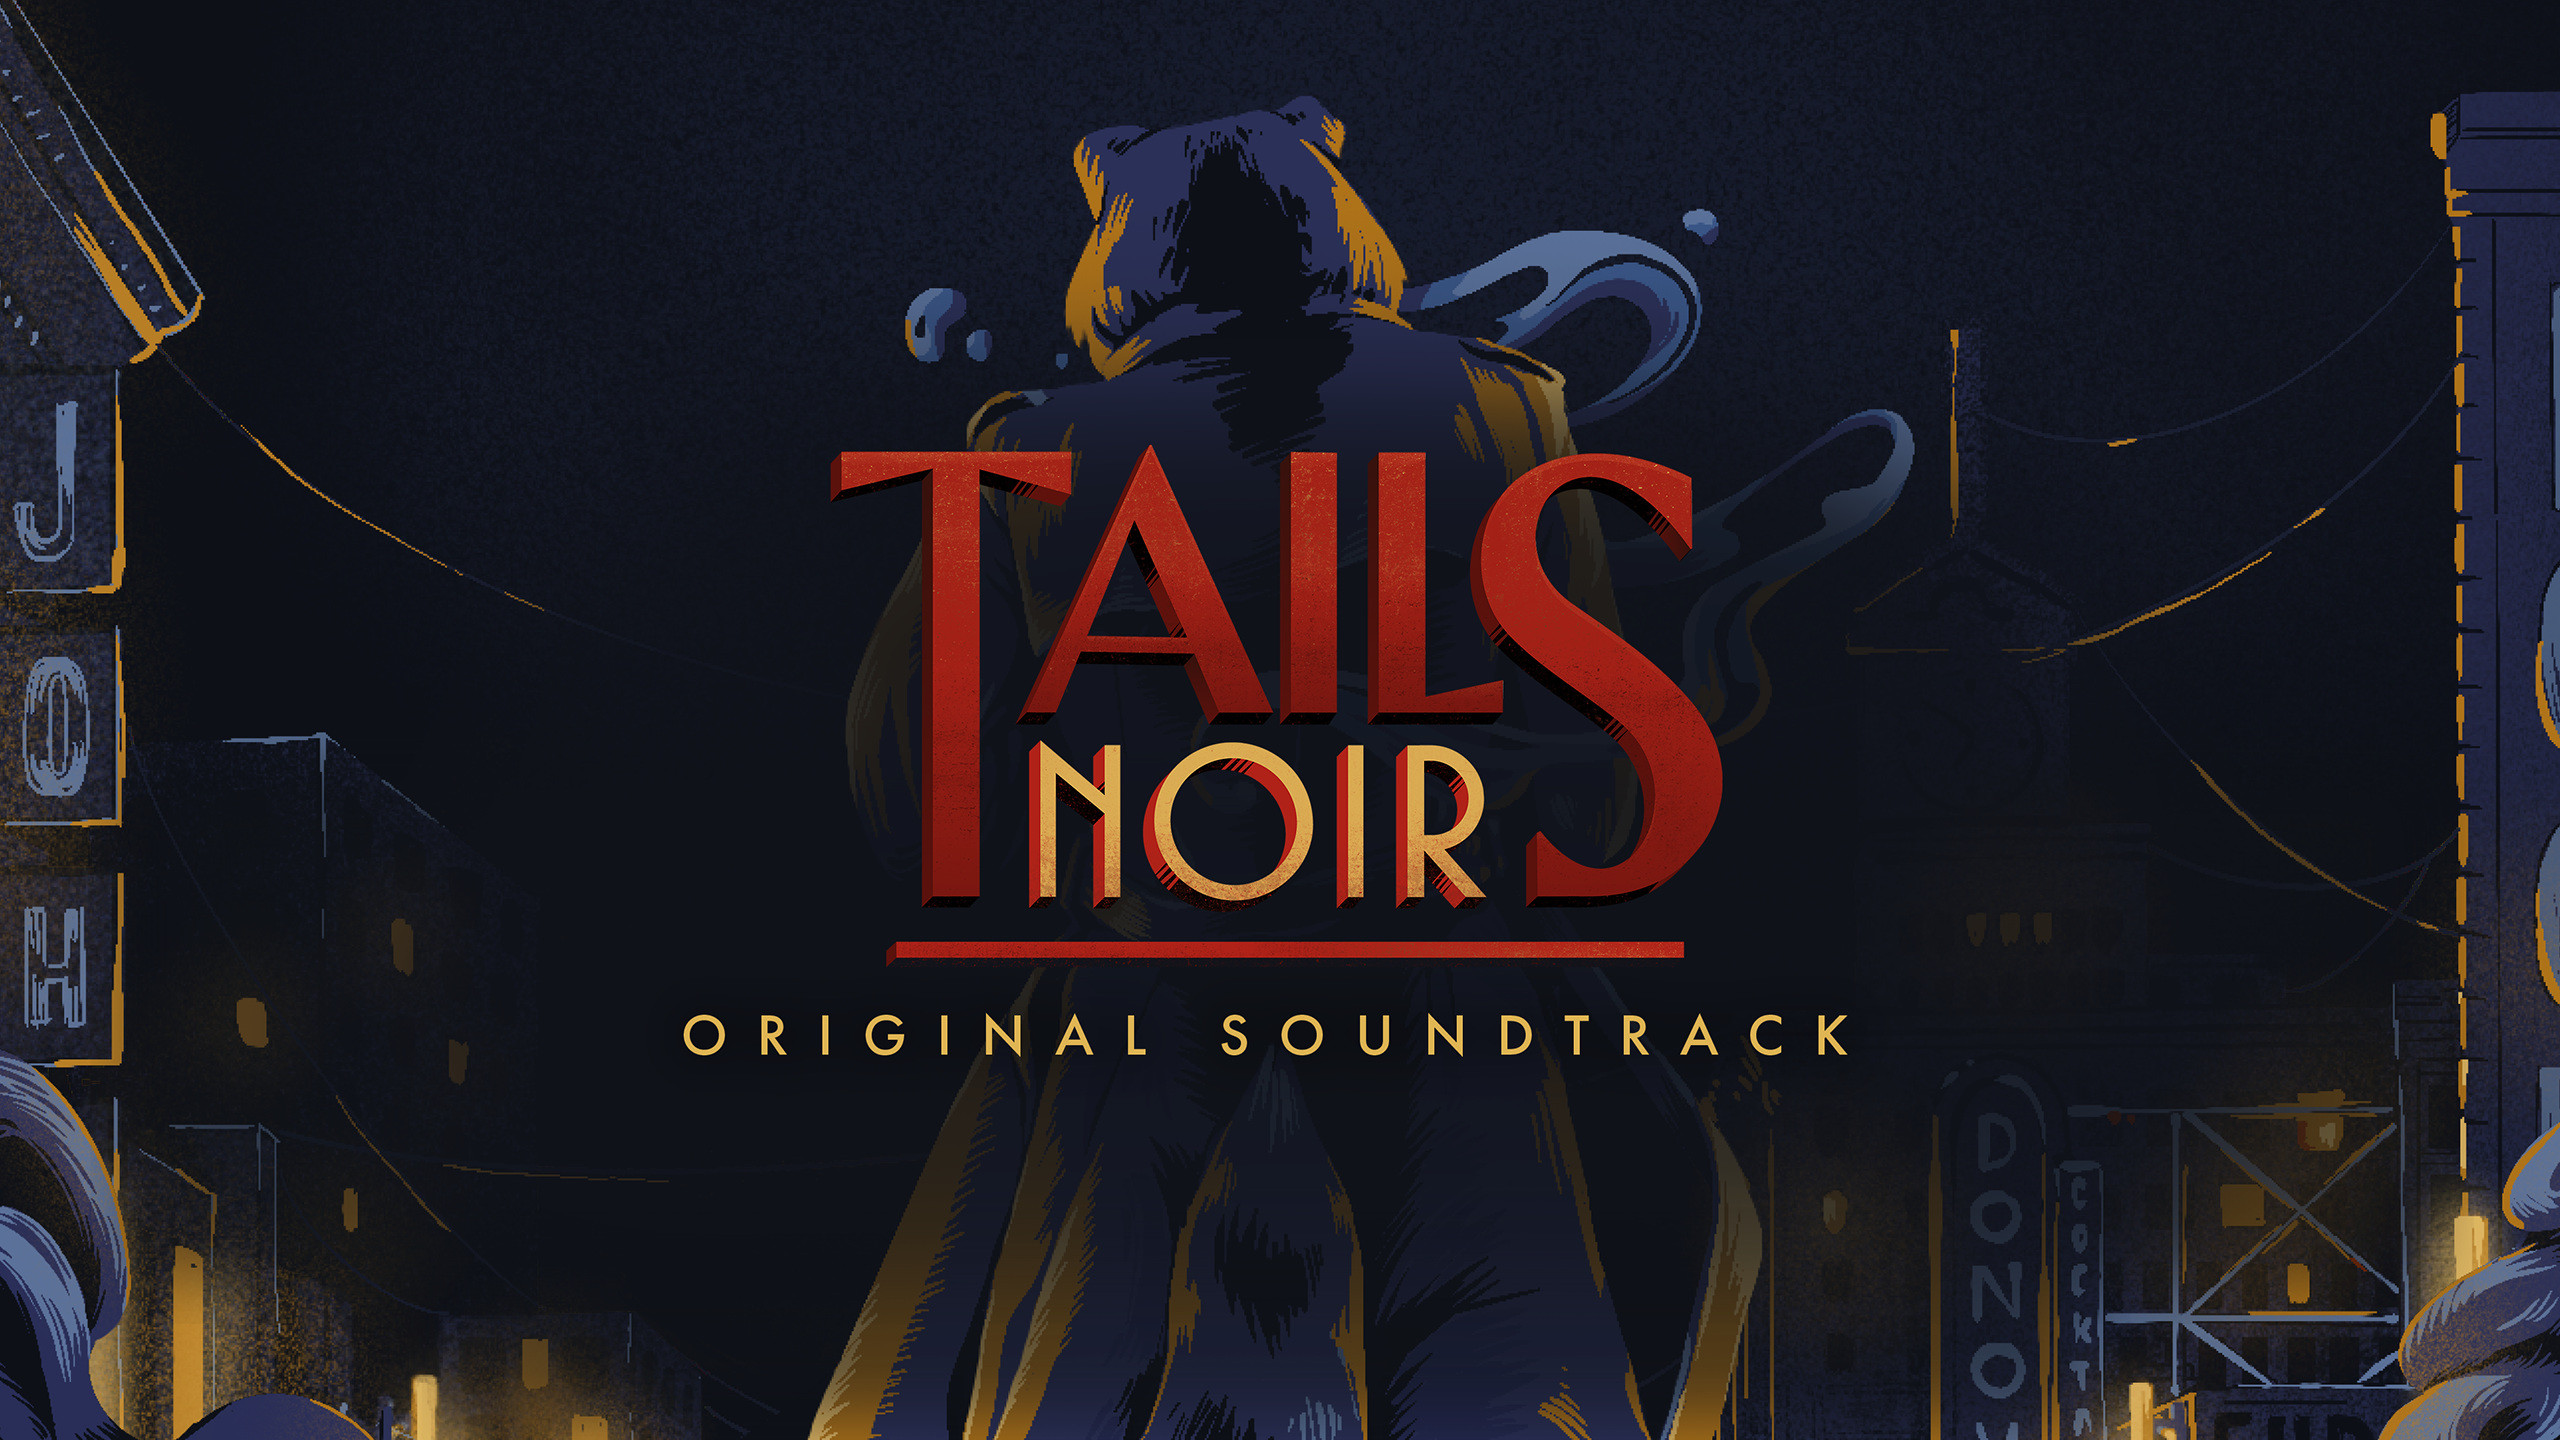 [$ 0.42] Tails Noir: Original Soundtrack DLC EU Steam CD Key